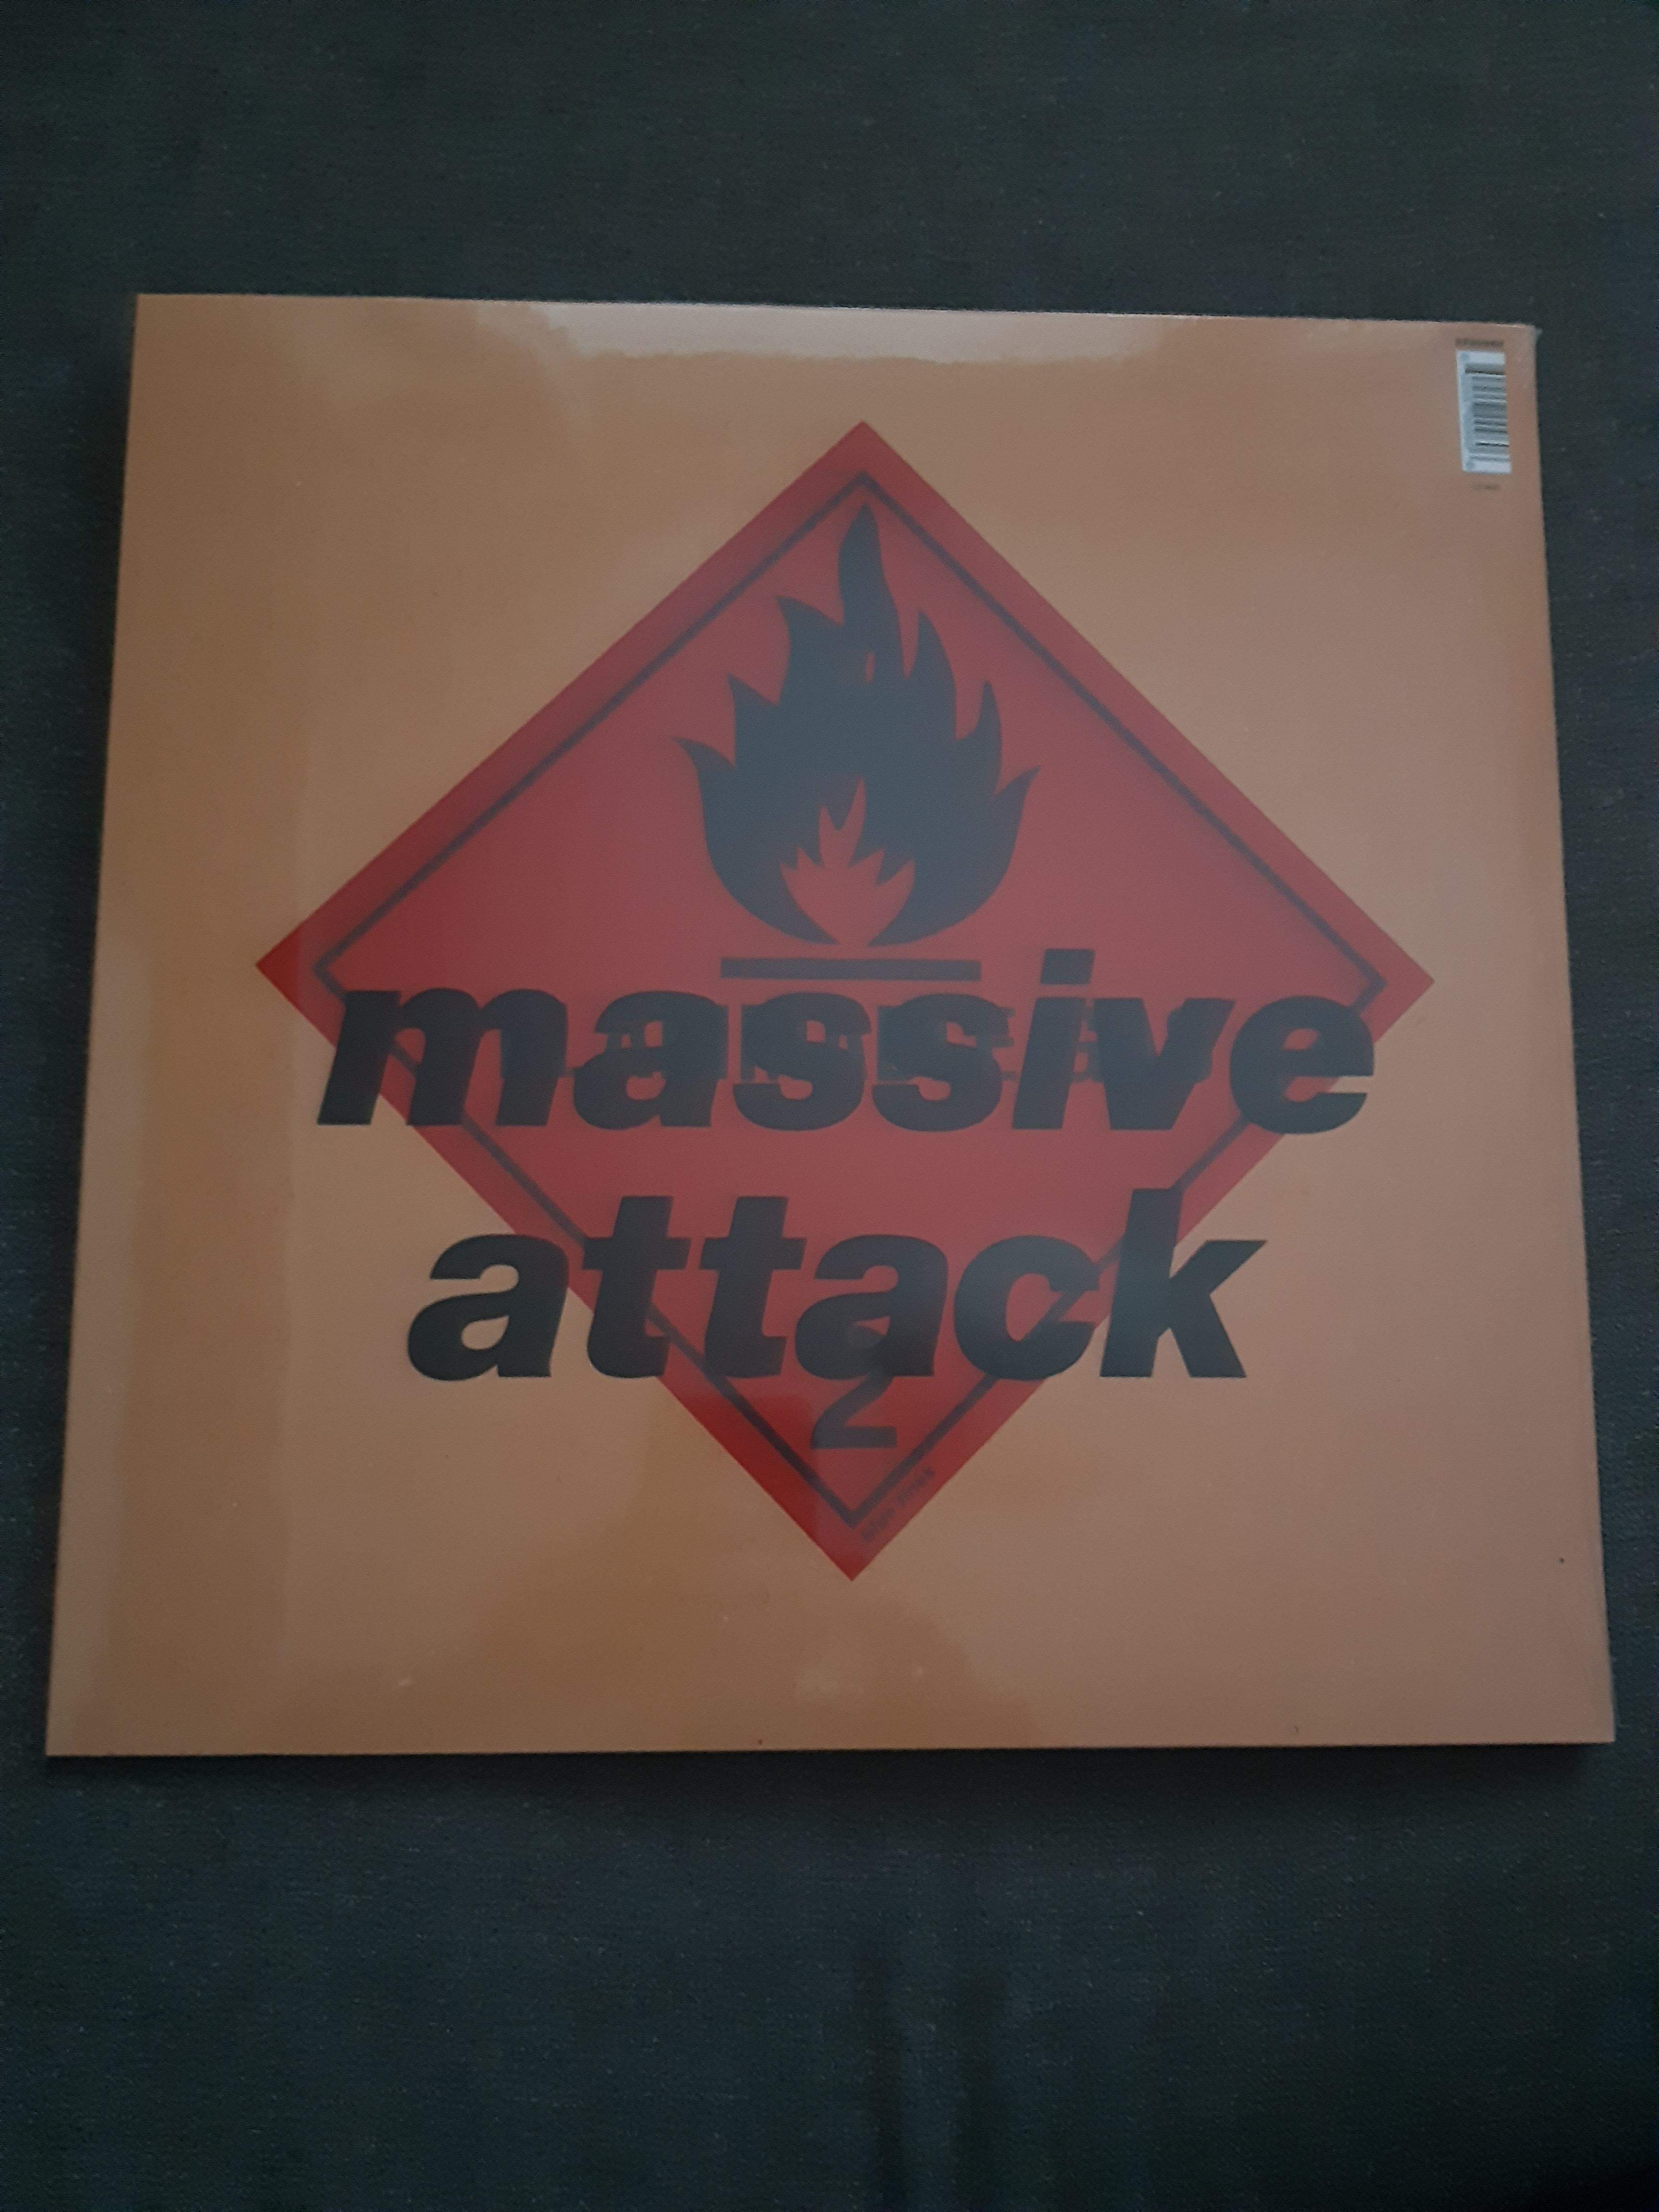 Massive Attack - Blue Lines - LP (uusi)